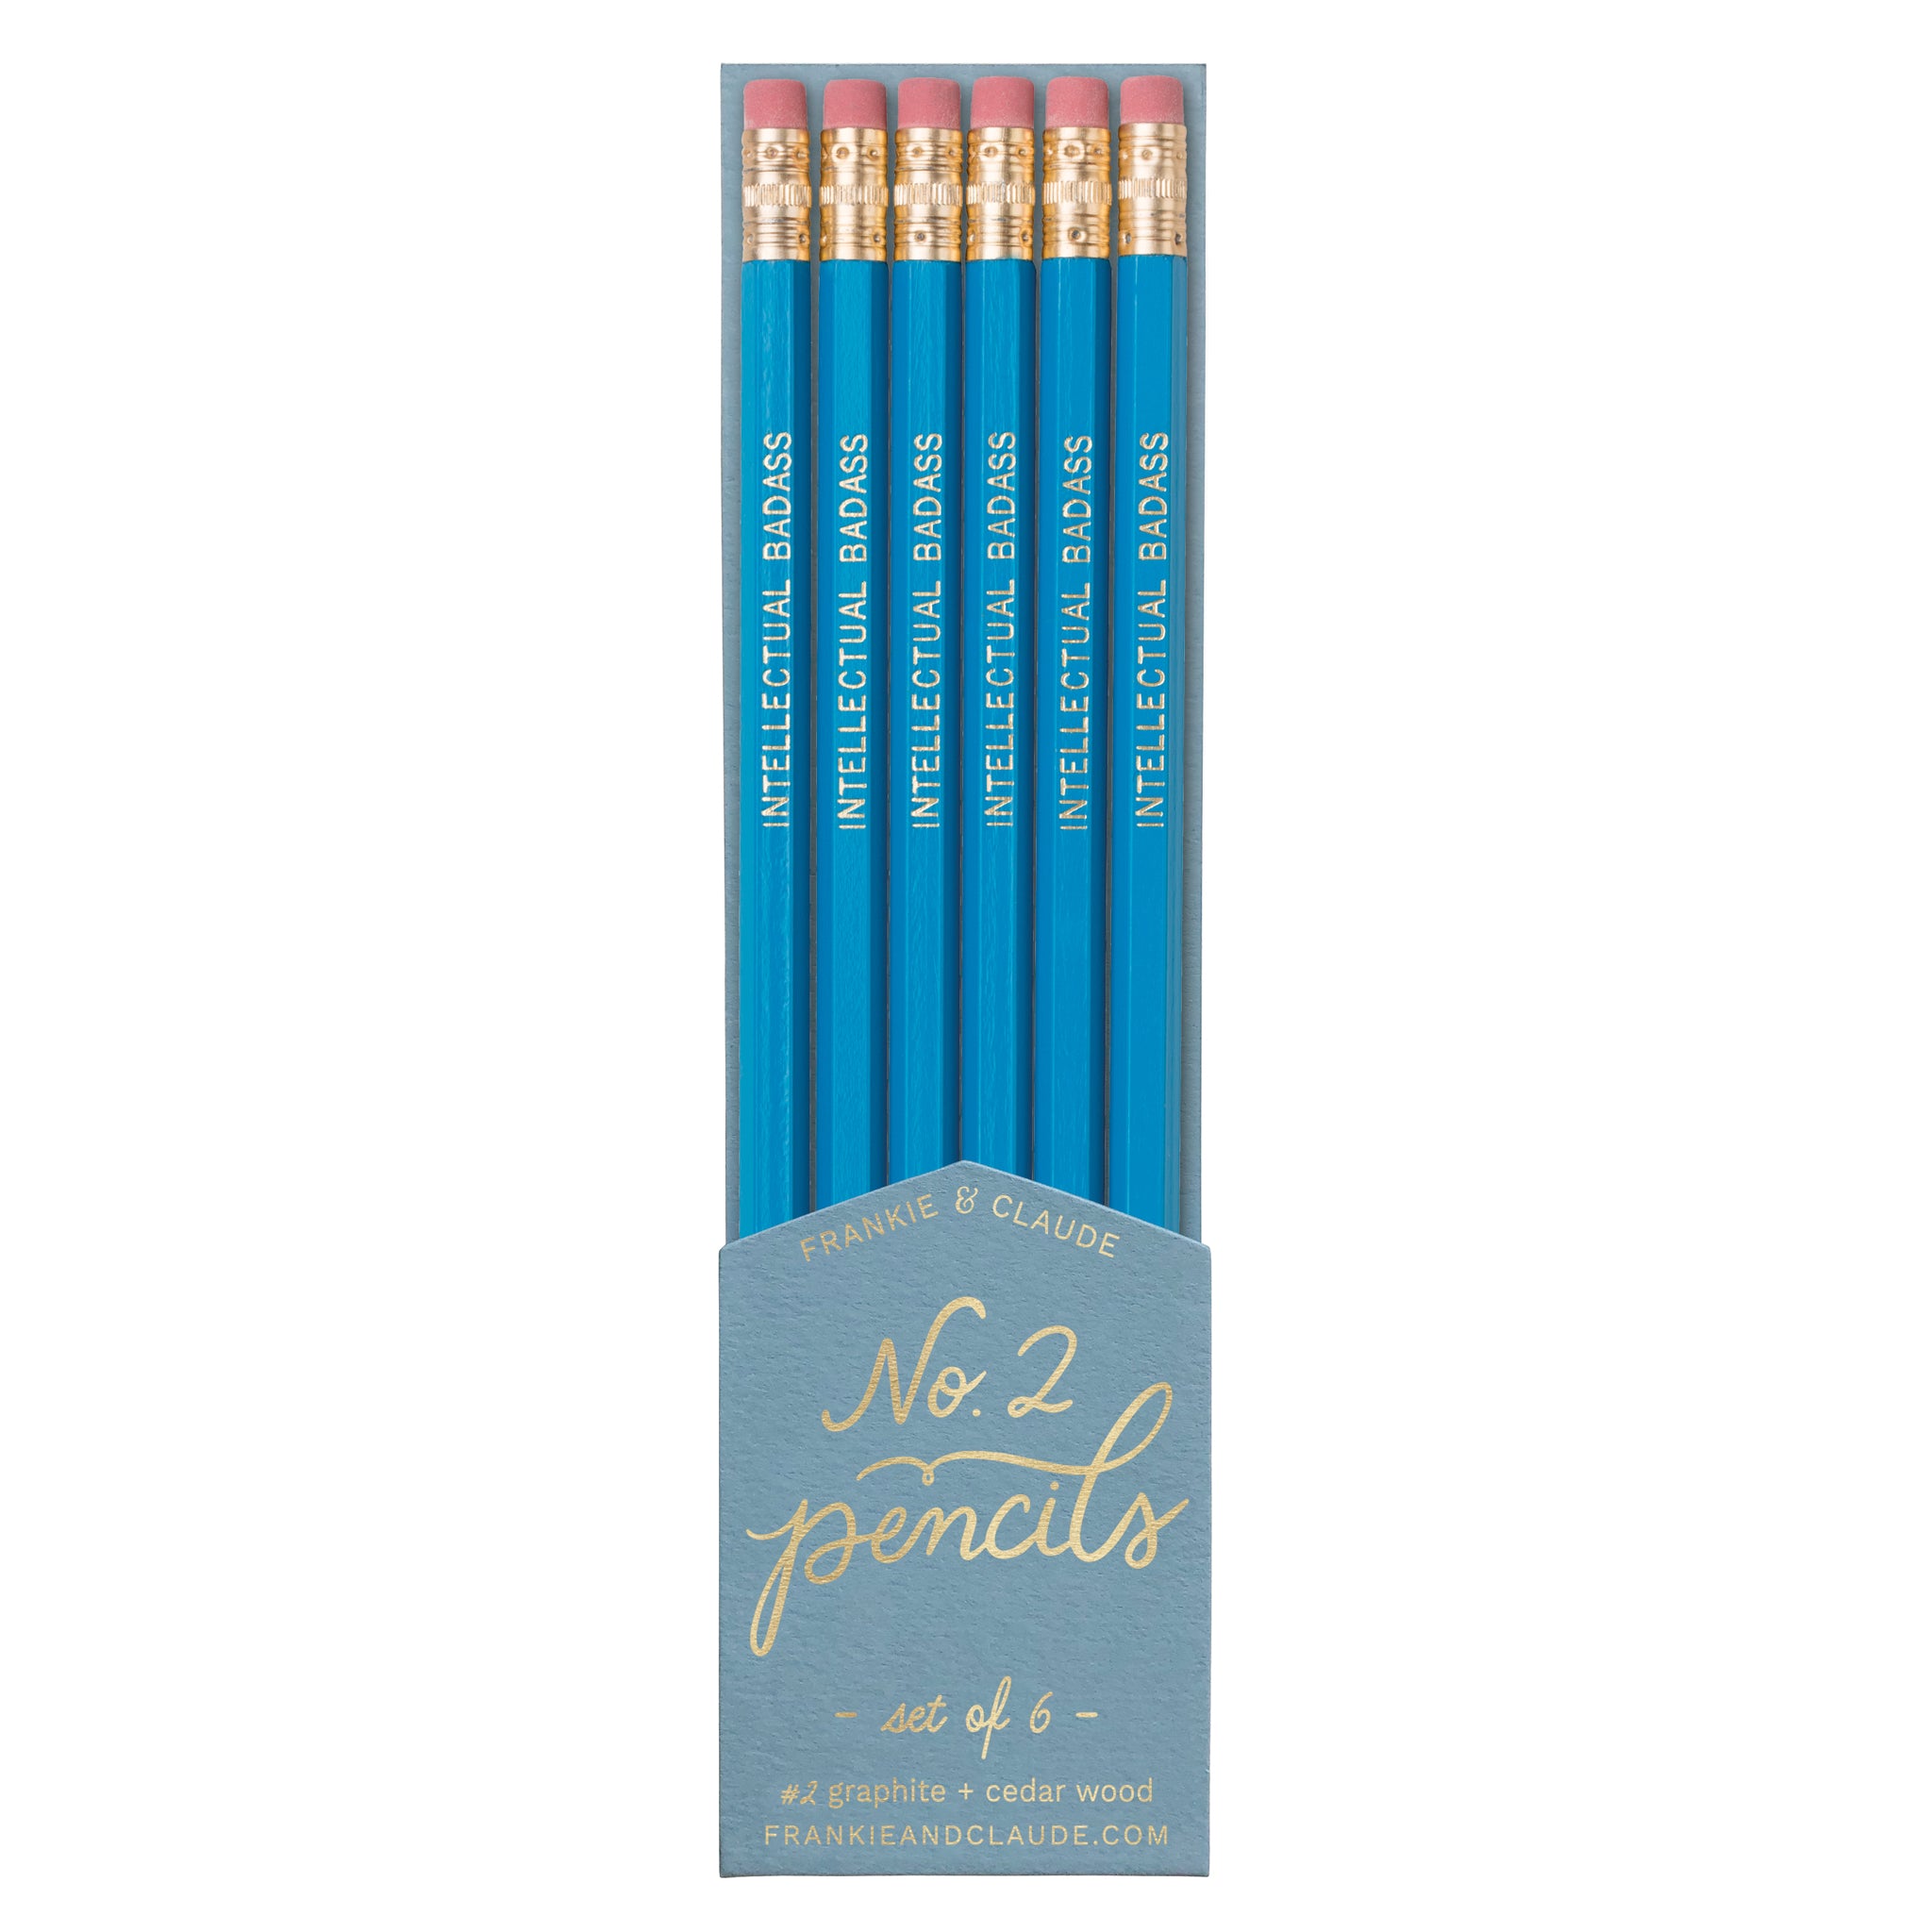 Intellectual Badass pencils